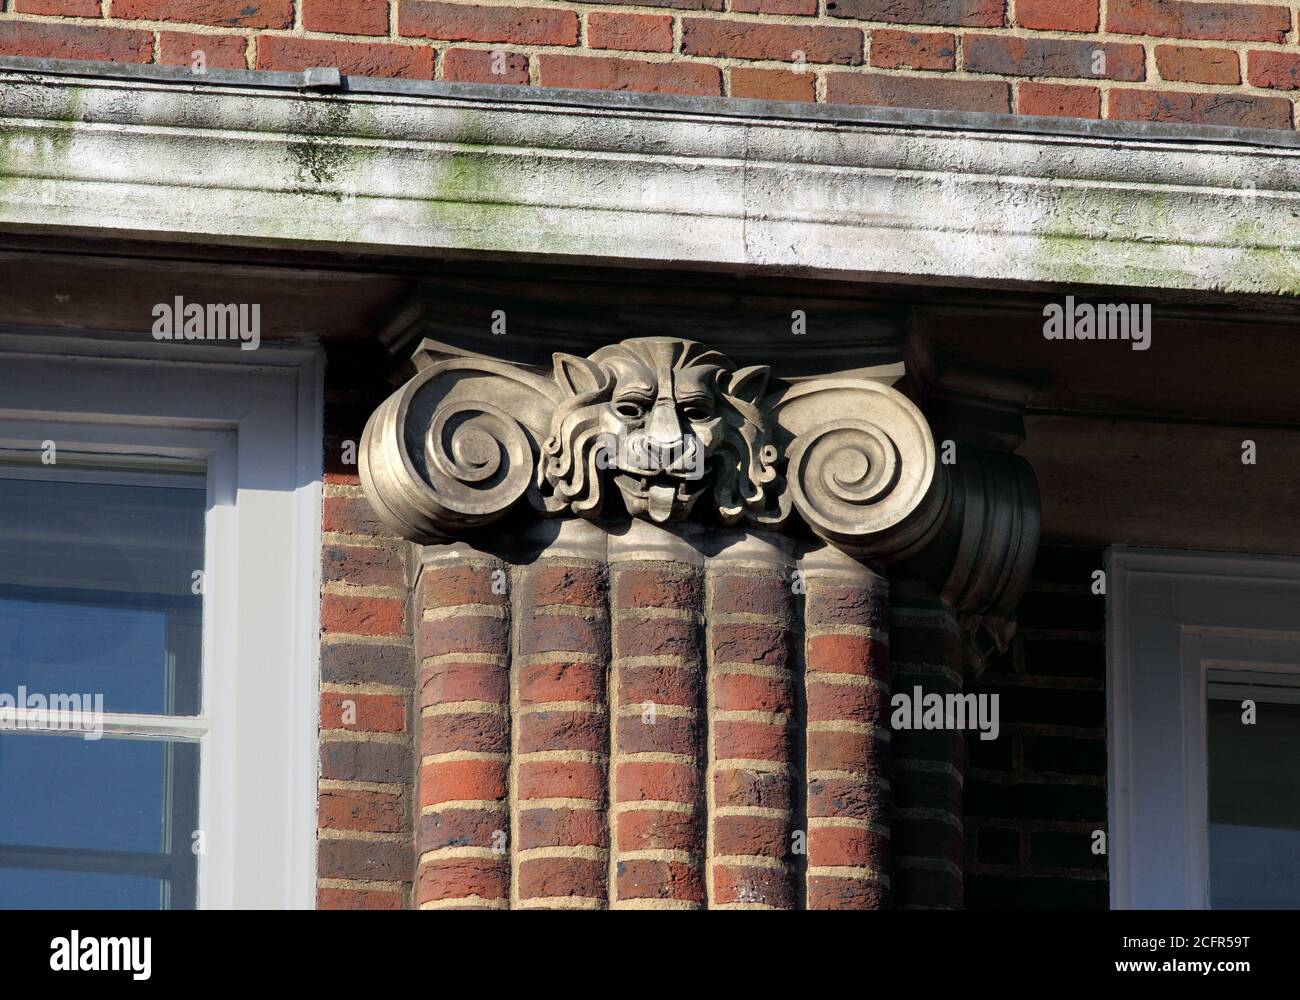 Primo piano della capitale ionica con la testa di un leone, in cima a un pilaster in mattoni su Refuge House, North St, Brighton. Foto Stock